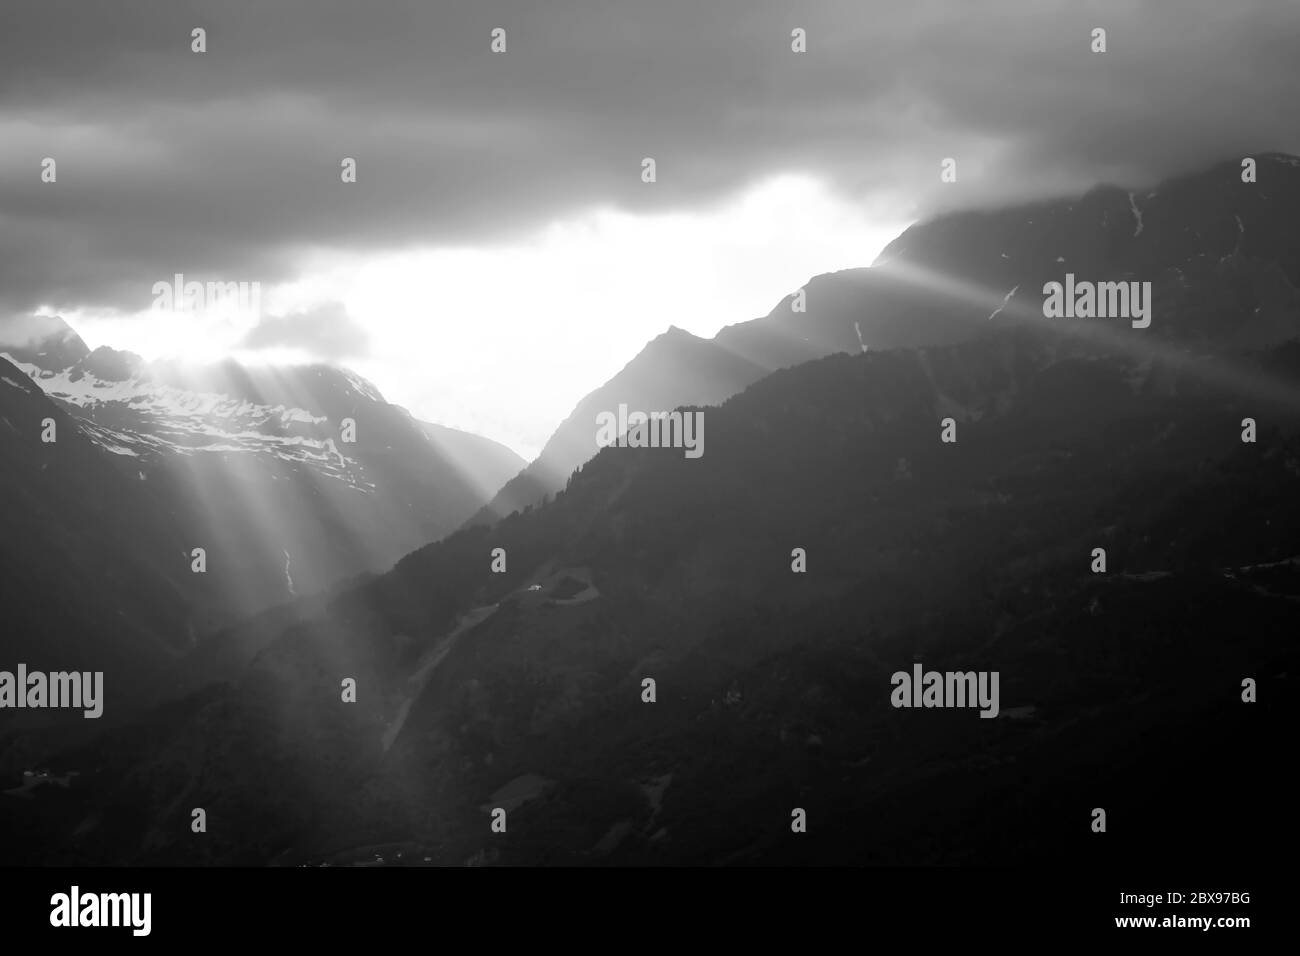 Alpes italiennes entourant la ville de Merano, Tyrol du Sud, Italie. Photographie en noir et blanc, niveaux de gris. Banque D'Images